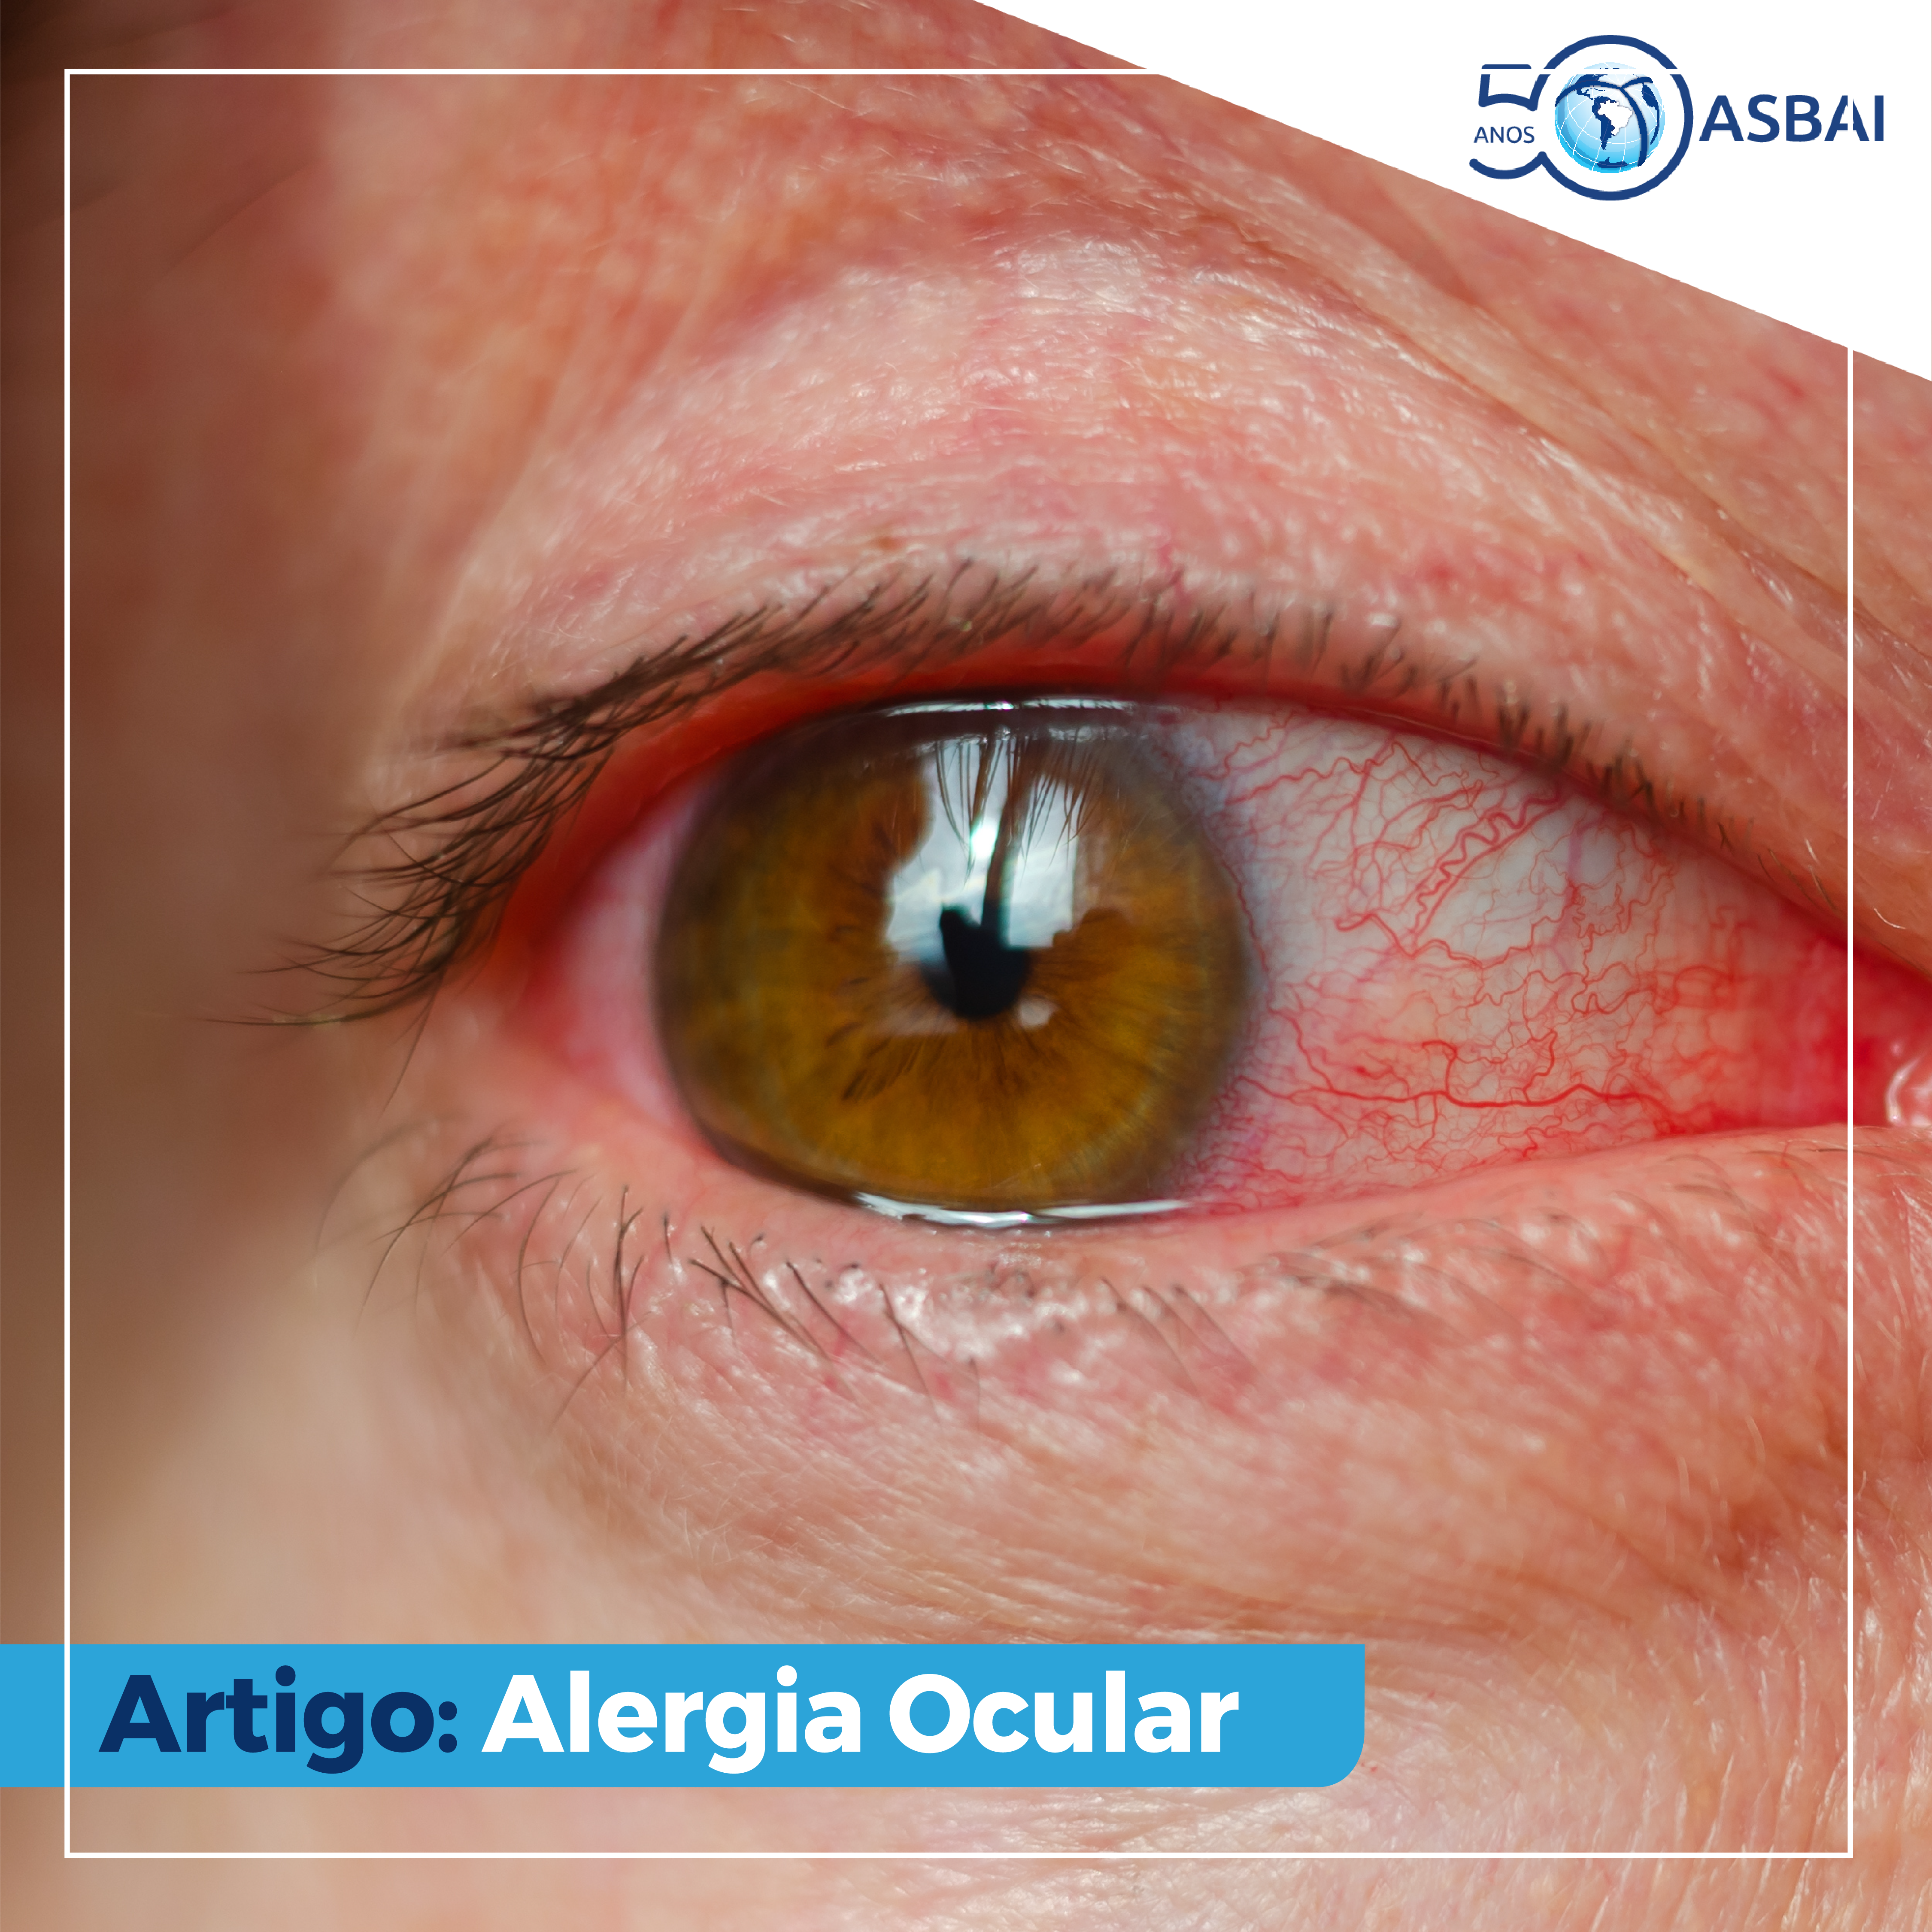 Alergia ocular pode afetar saúde mental e social do paciente